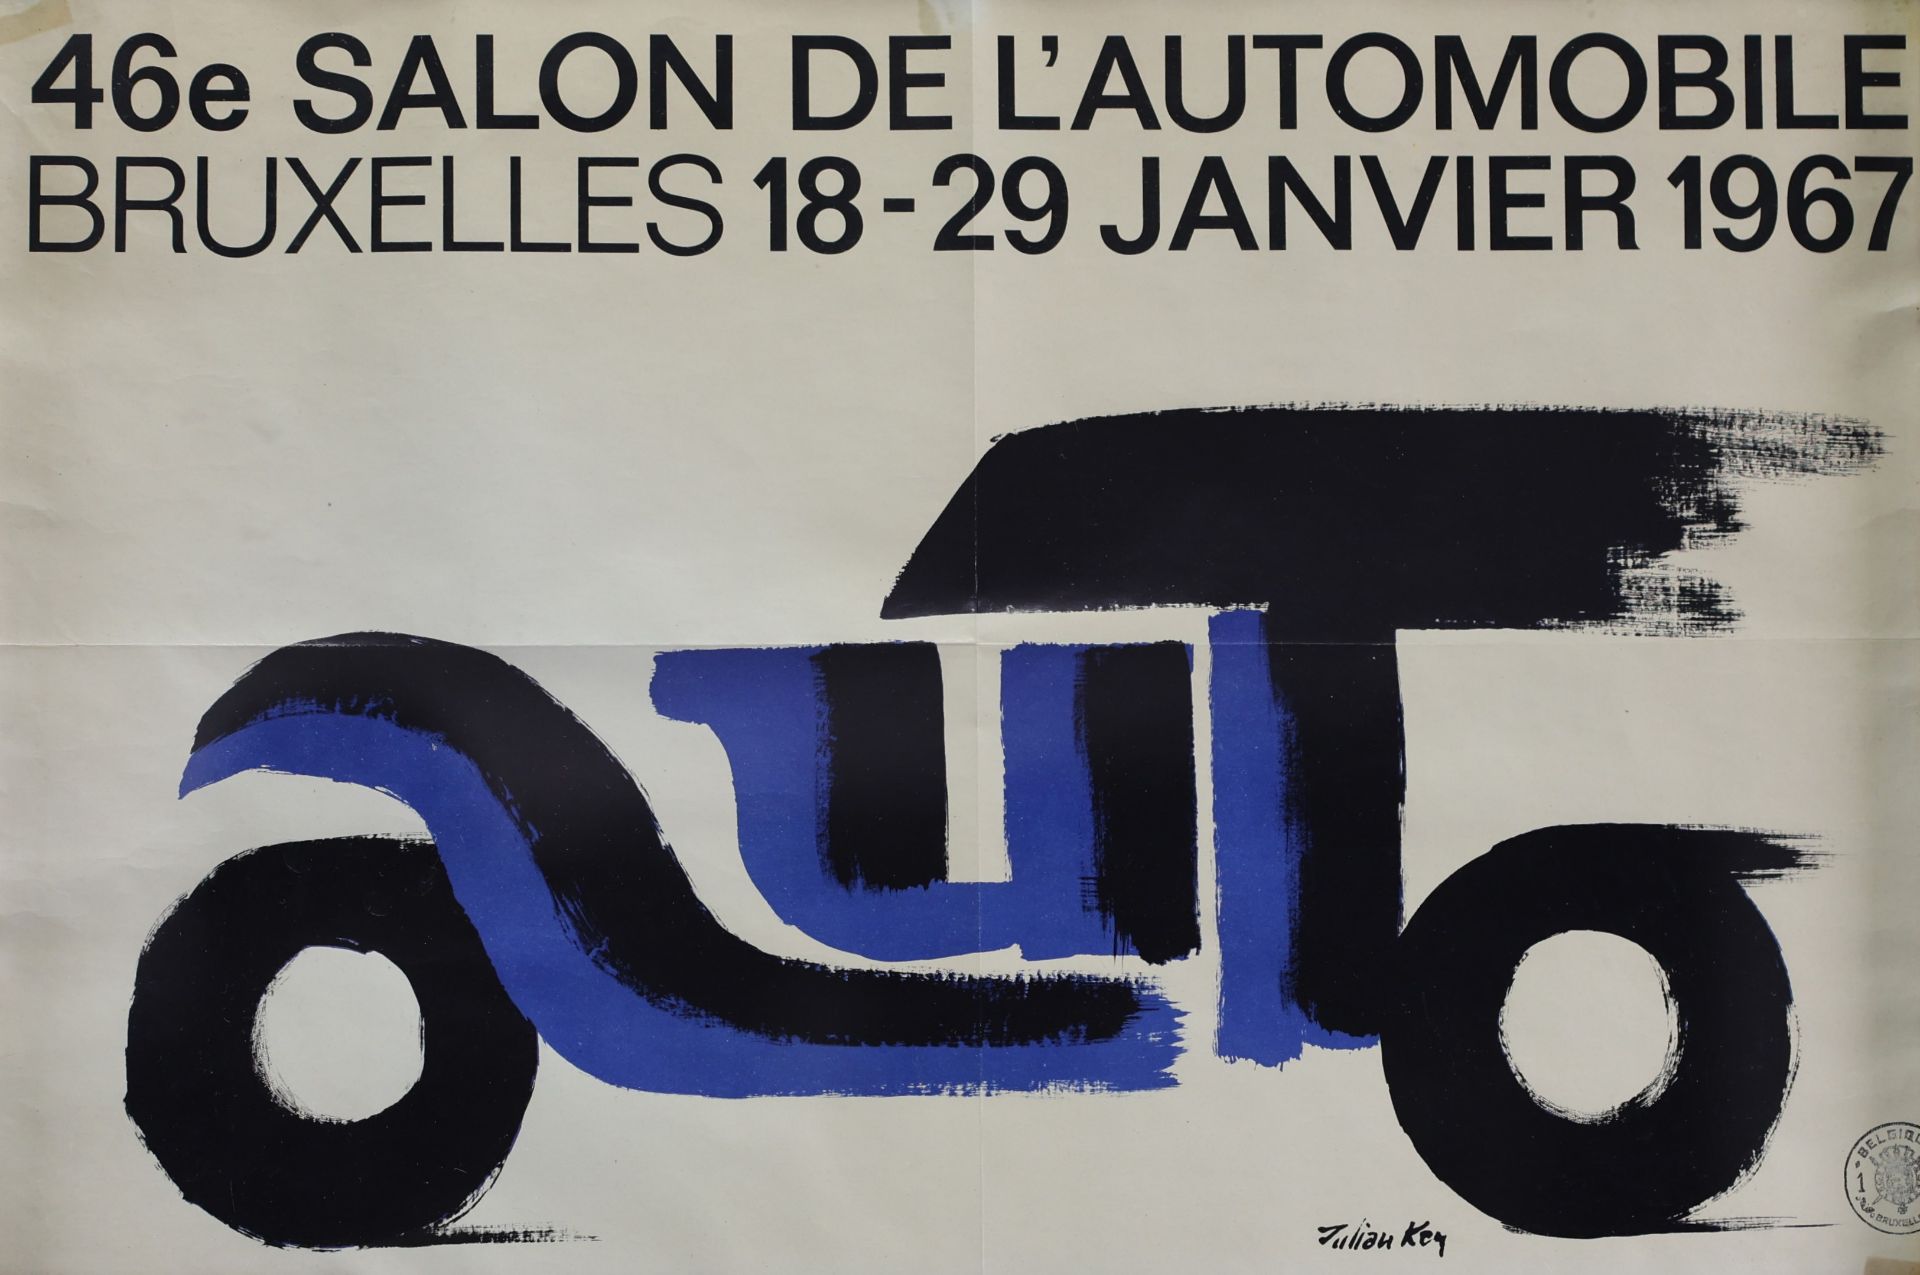 Julian KEY (1930-1999) Poster â€˜46e Salon de l'automobile a Bruxelles 1967â€™ by Jan De Vos.